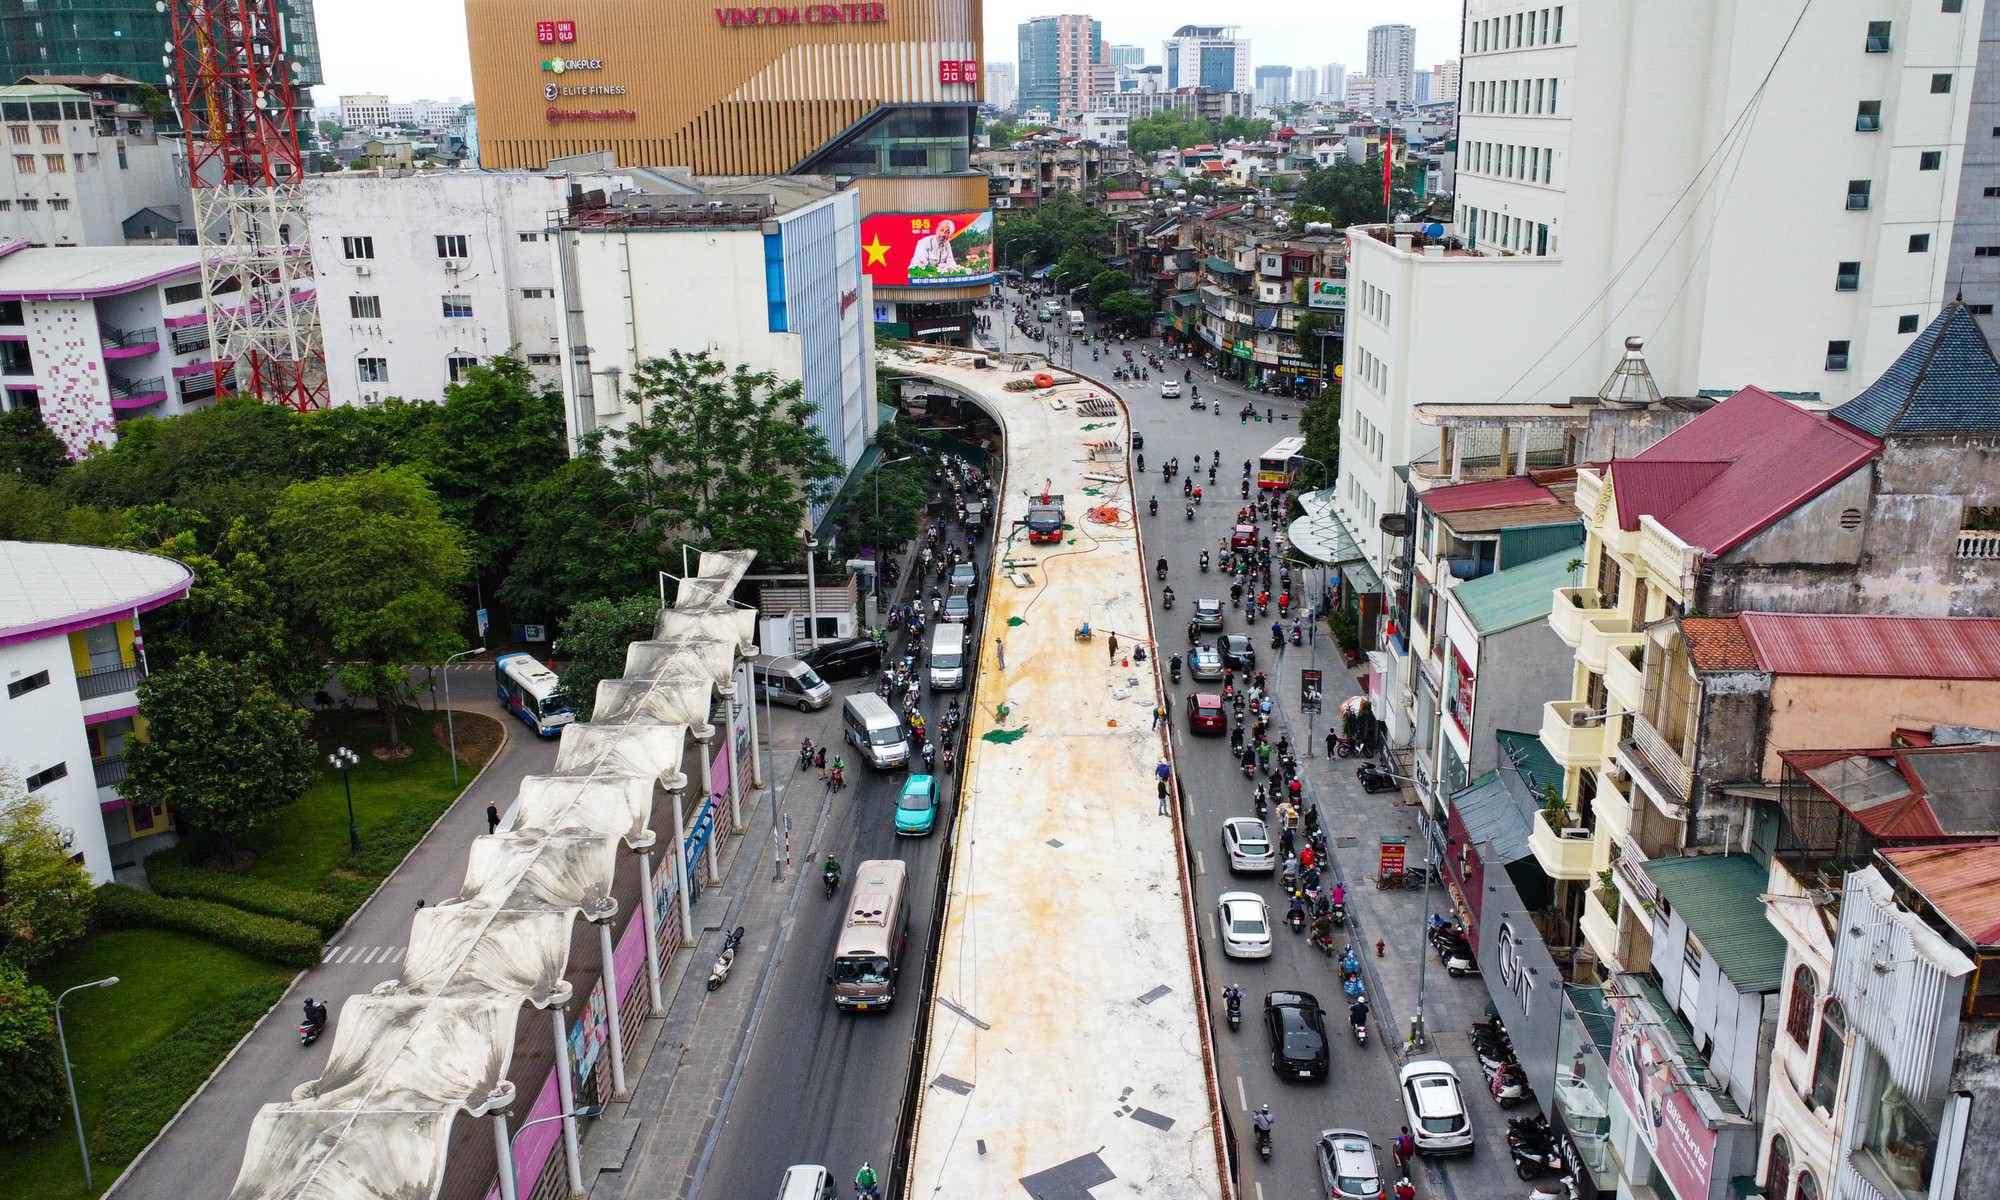 Hình hài cầu vượt chữ C 150 tỉ đồng sắp thông xe ở Hà Nội - Ảnh 2.